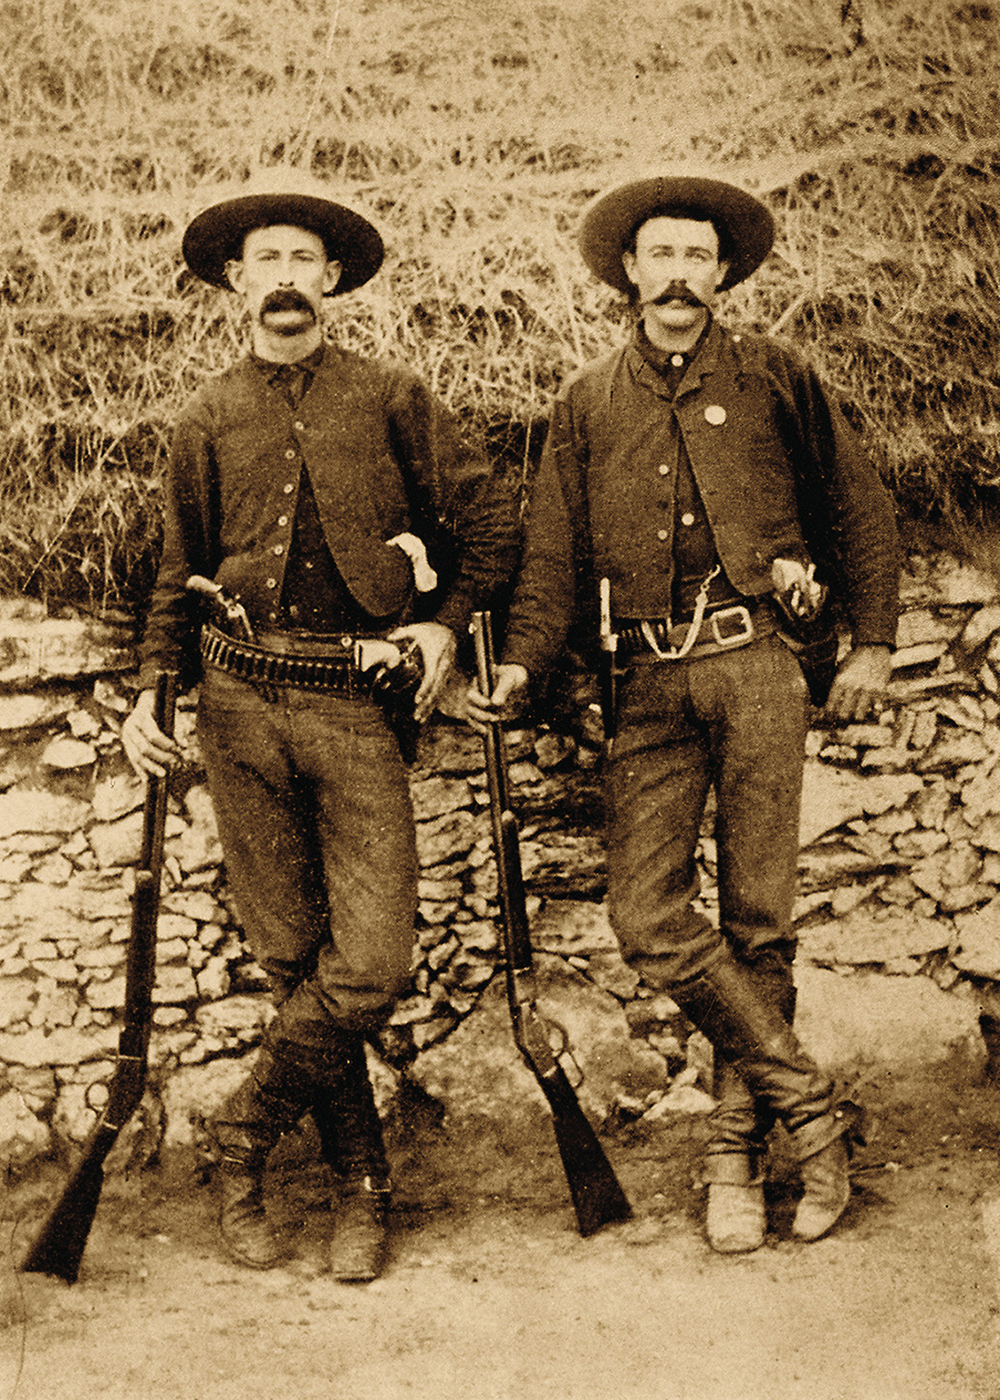 texas rangers 1880s